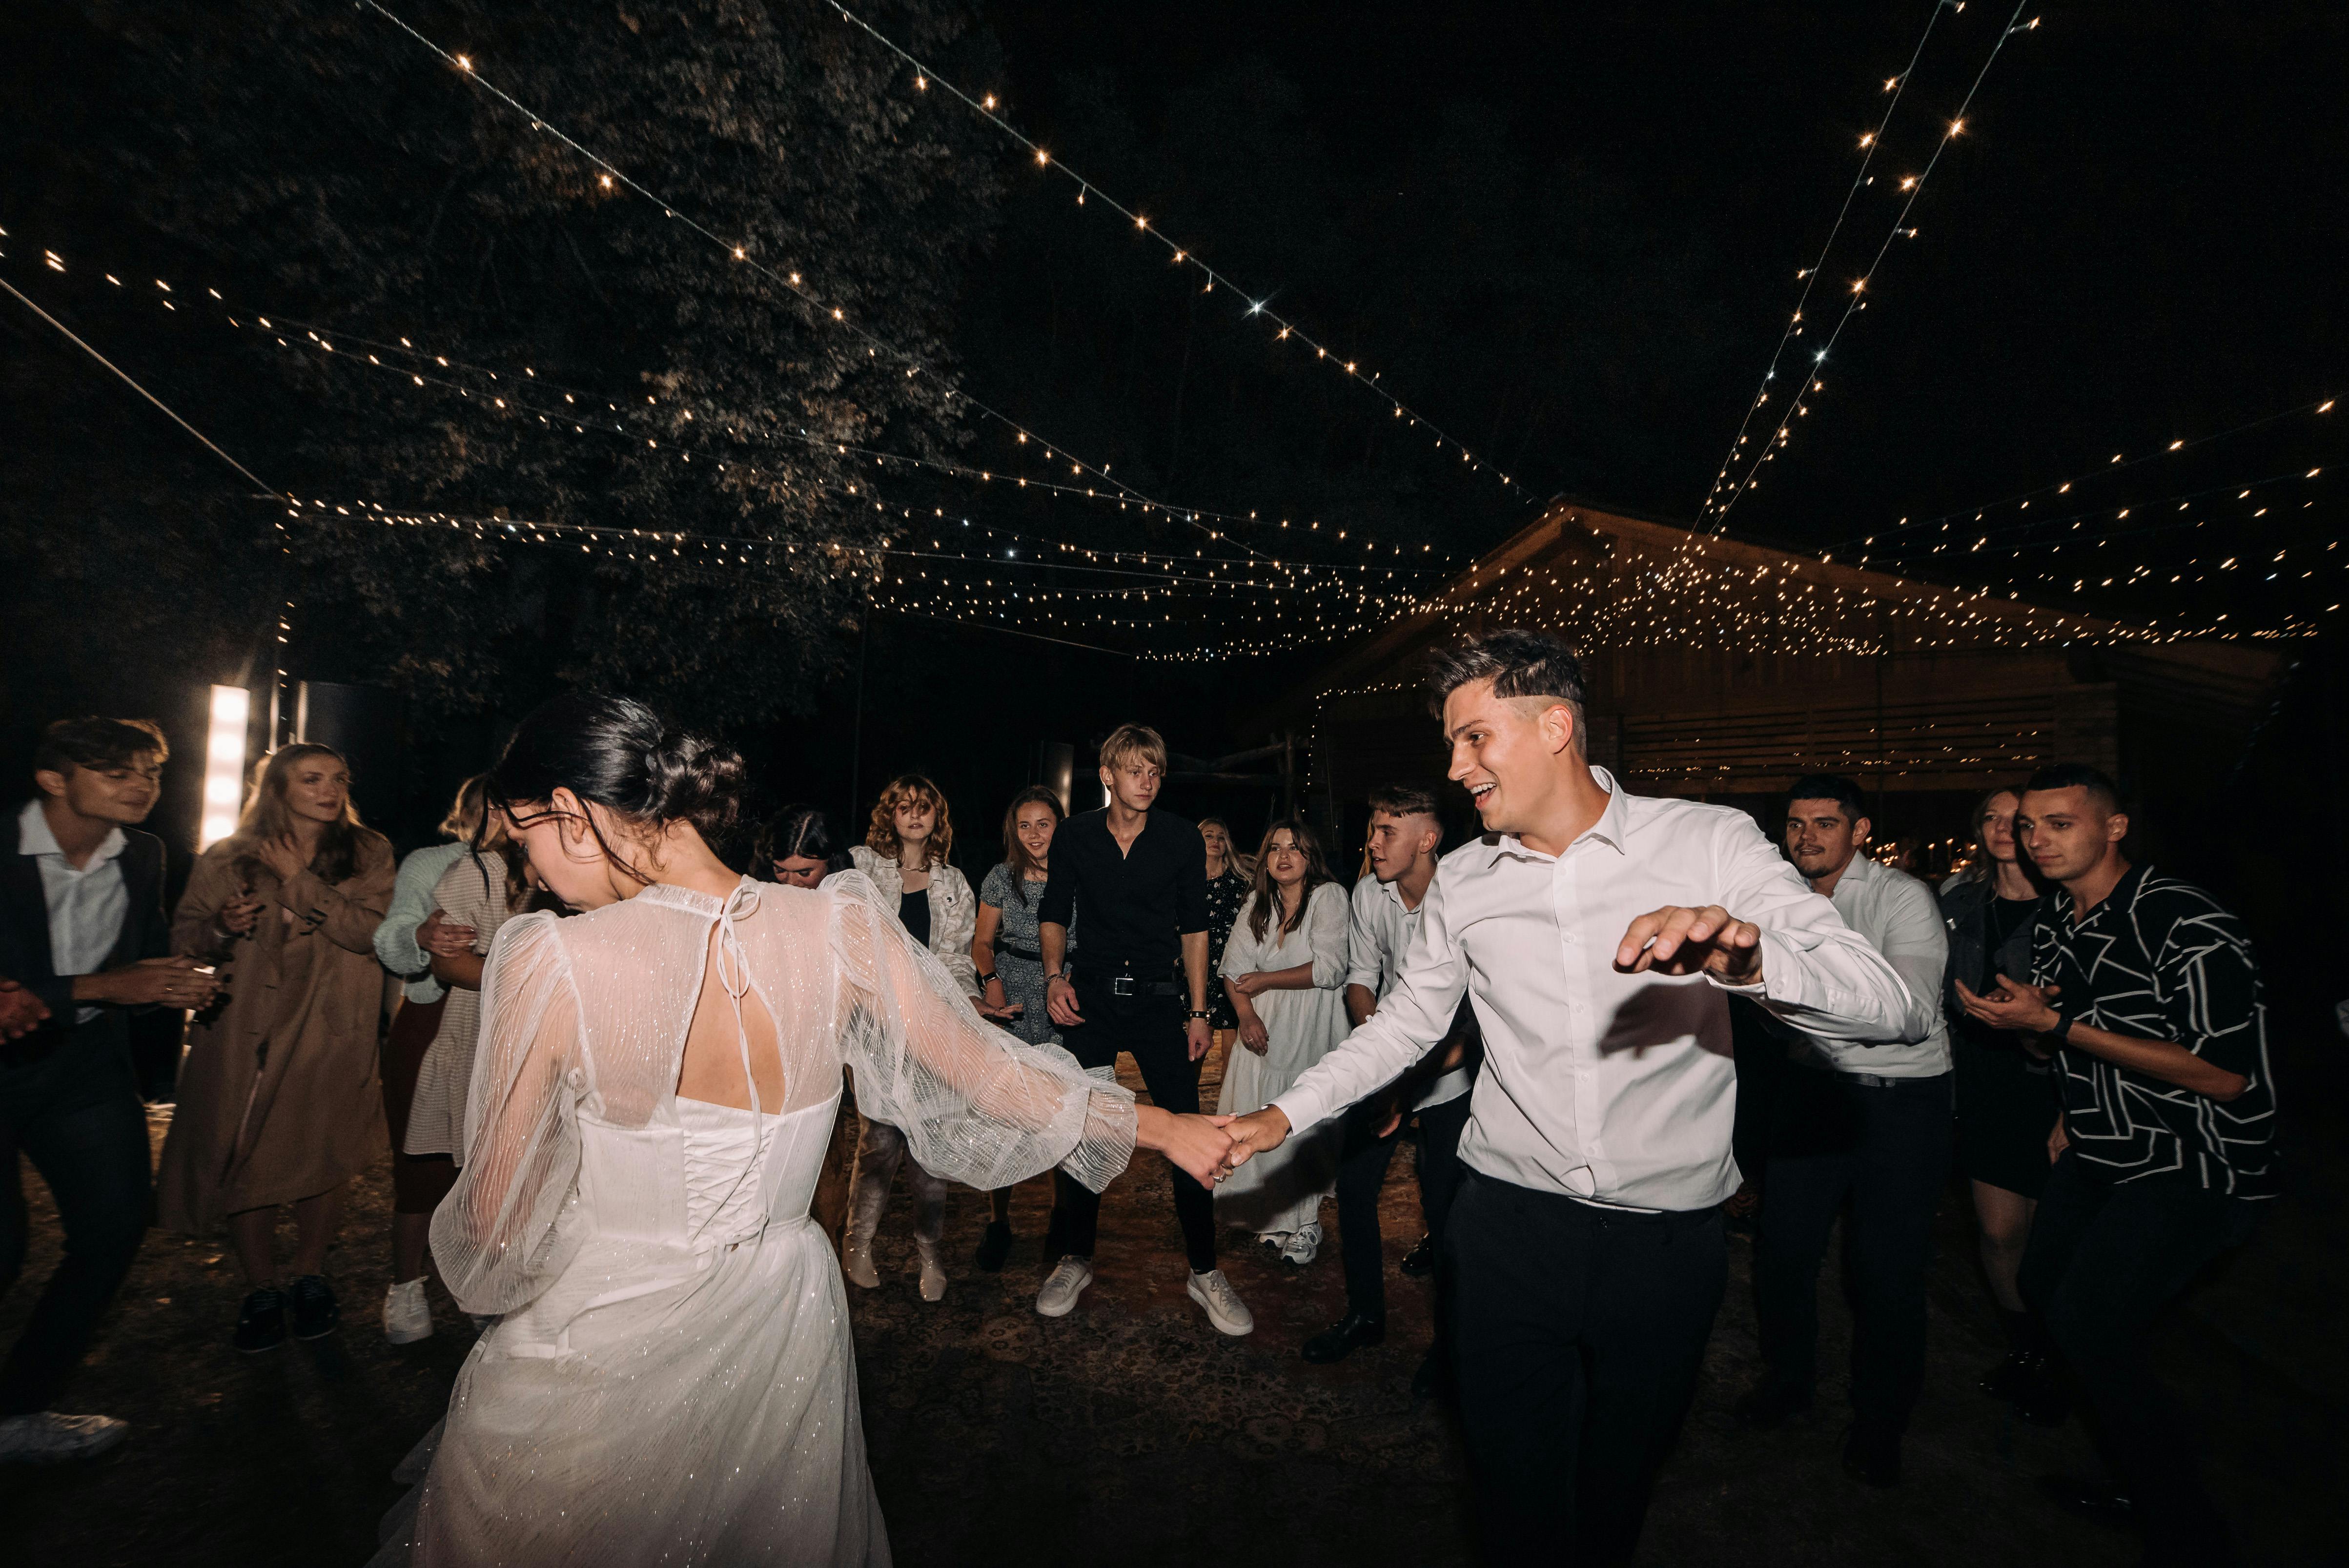 Una pareja de recién casados bailando | Fuente: Pexels